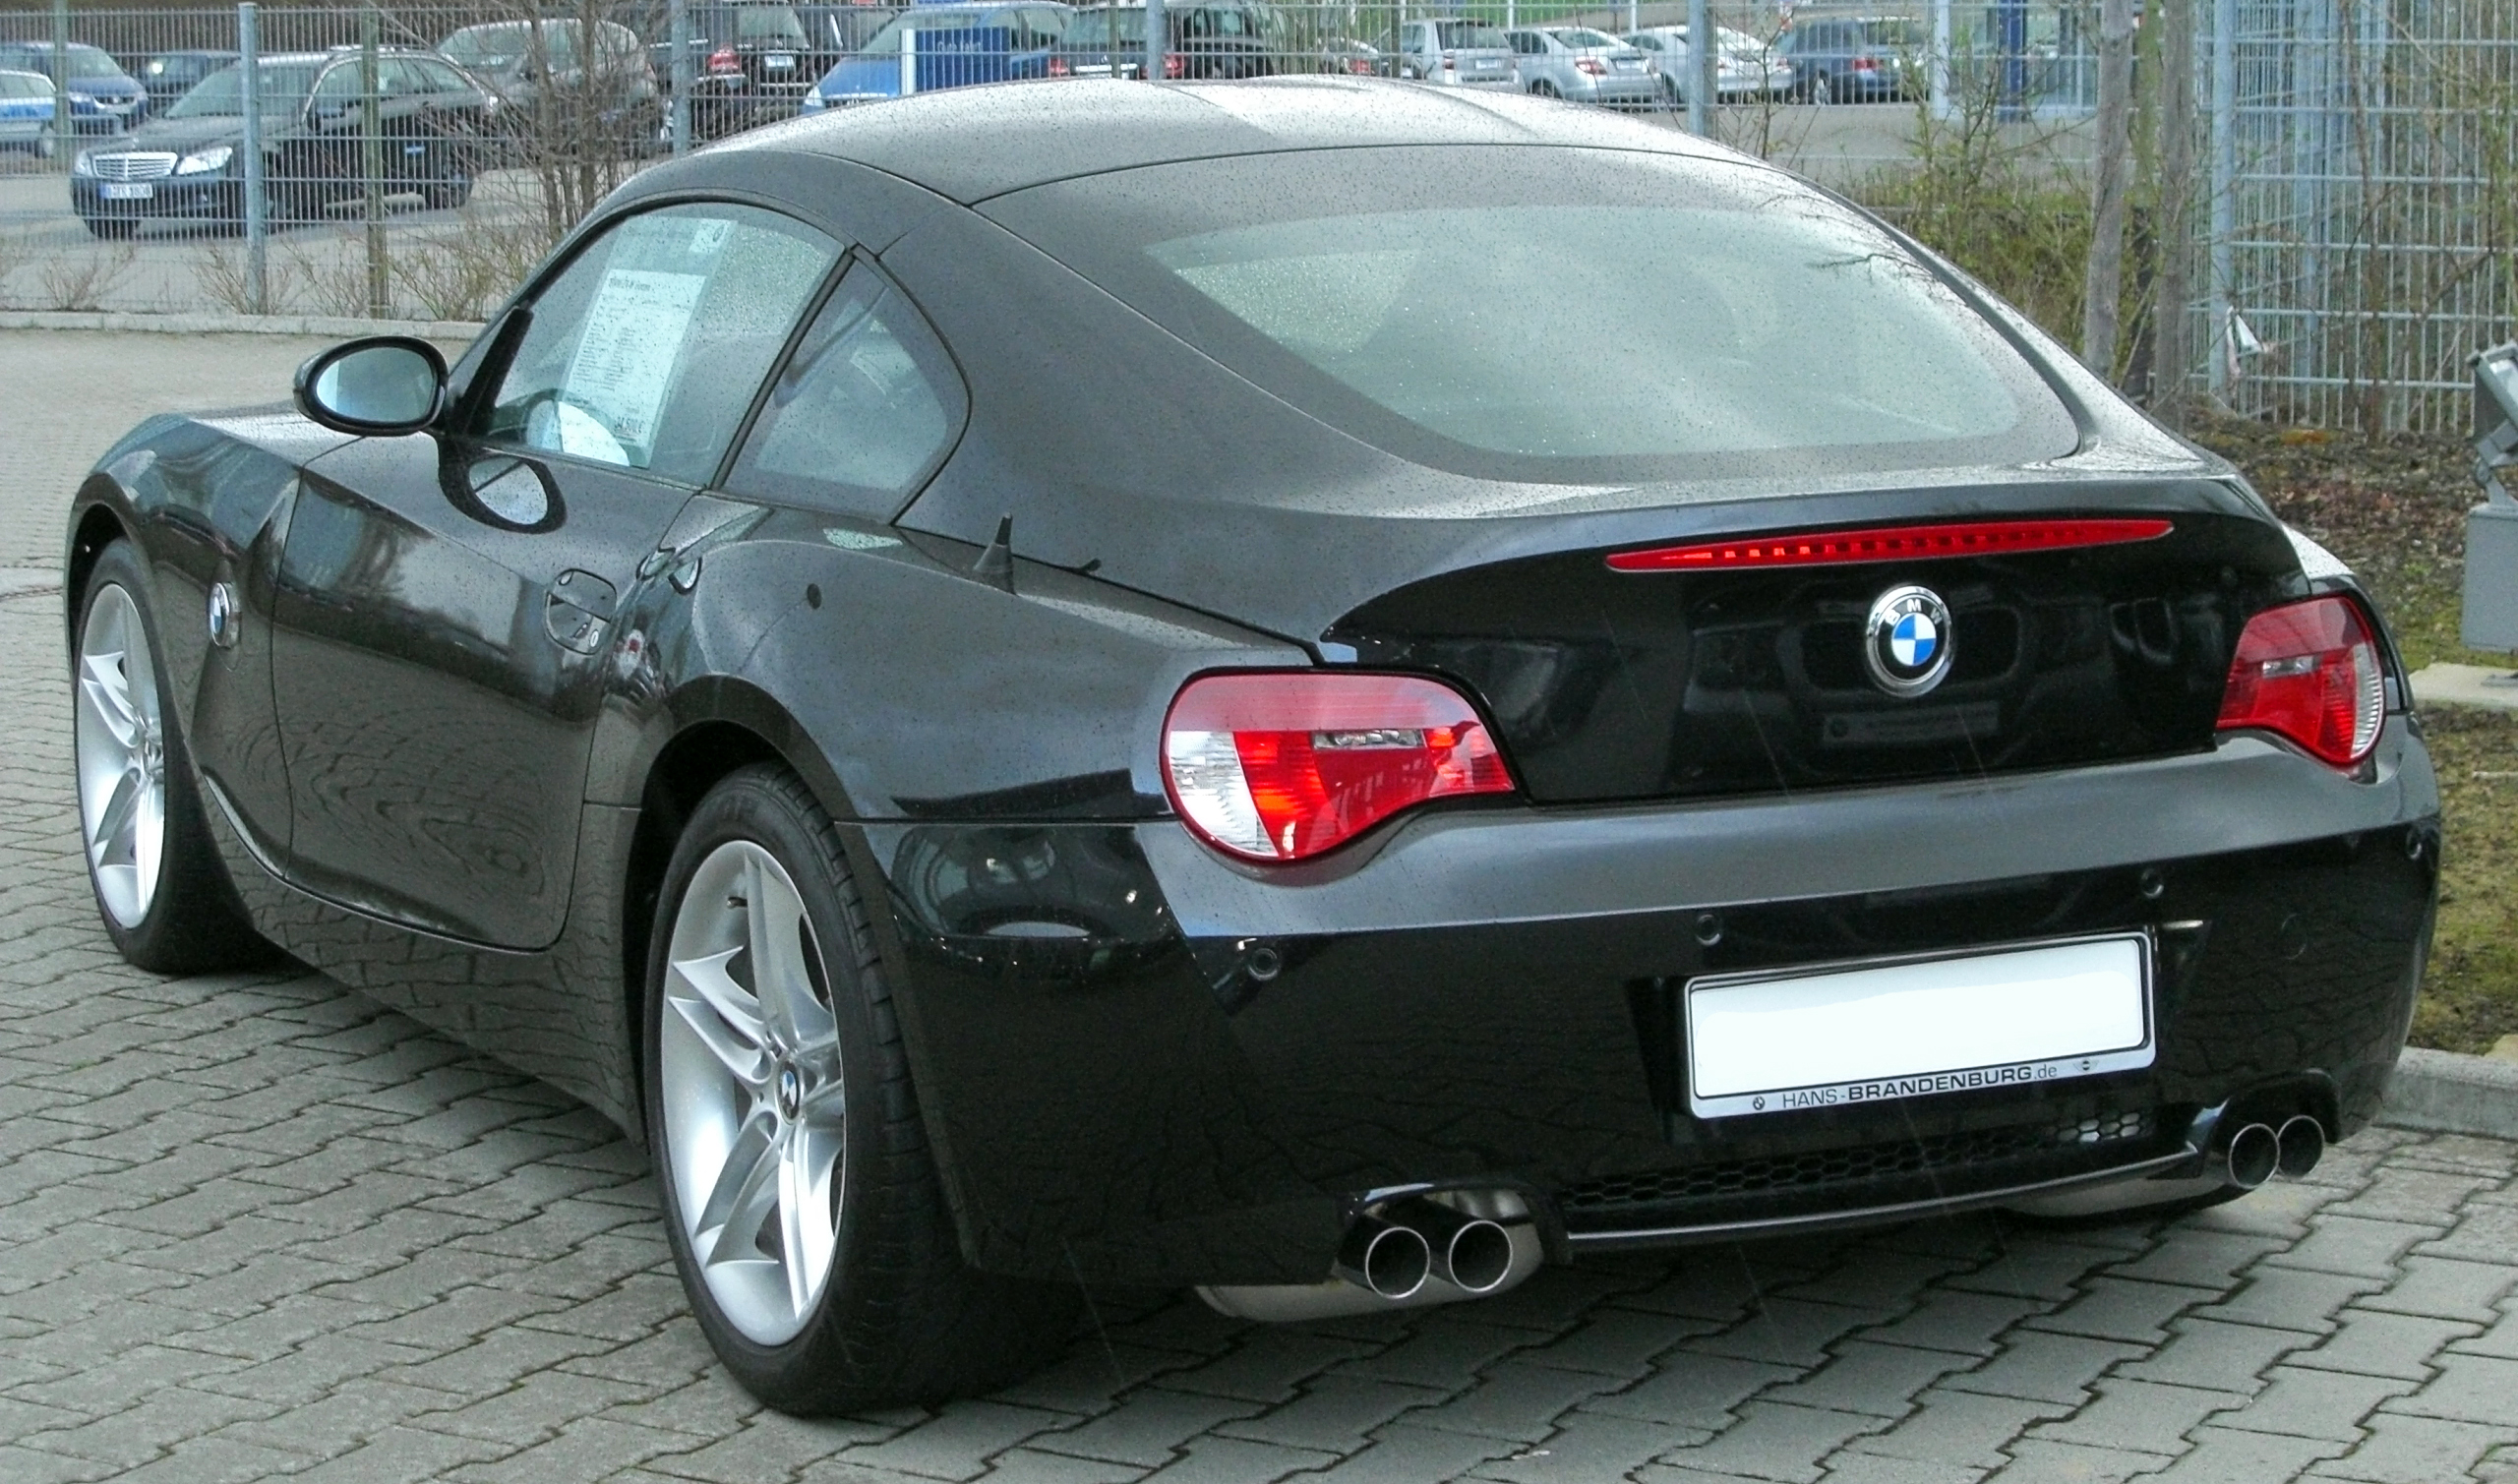 File:BMW Z4 M CoupÃ© rear 20100328.jpg